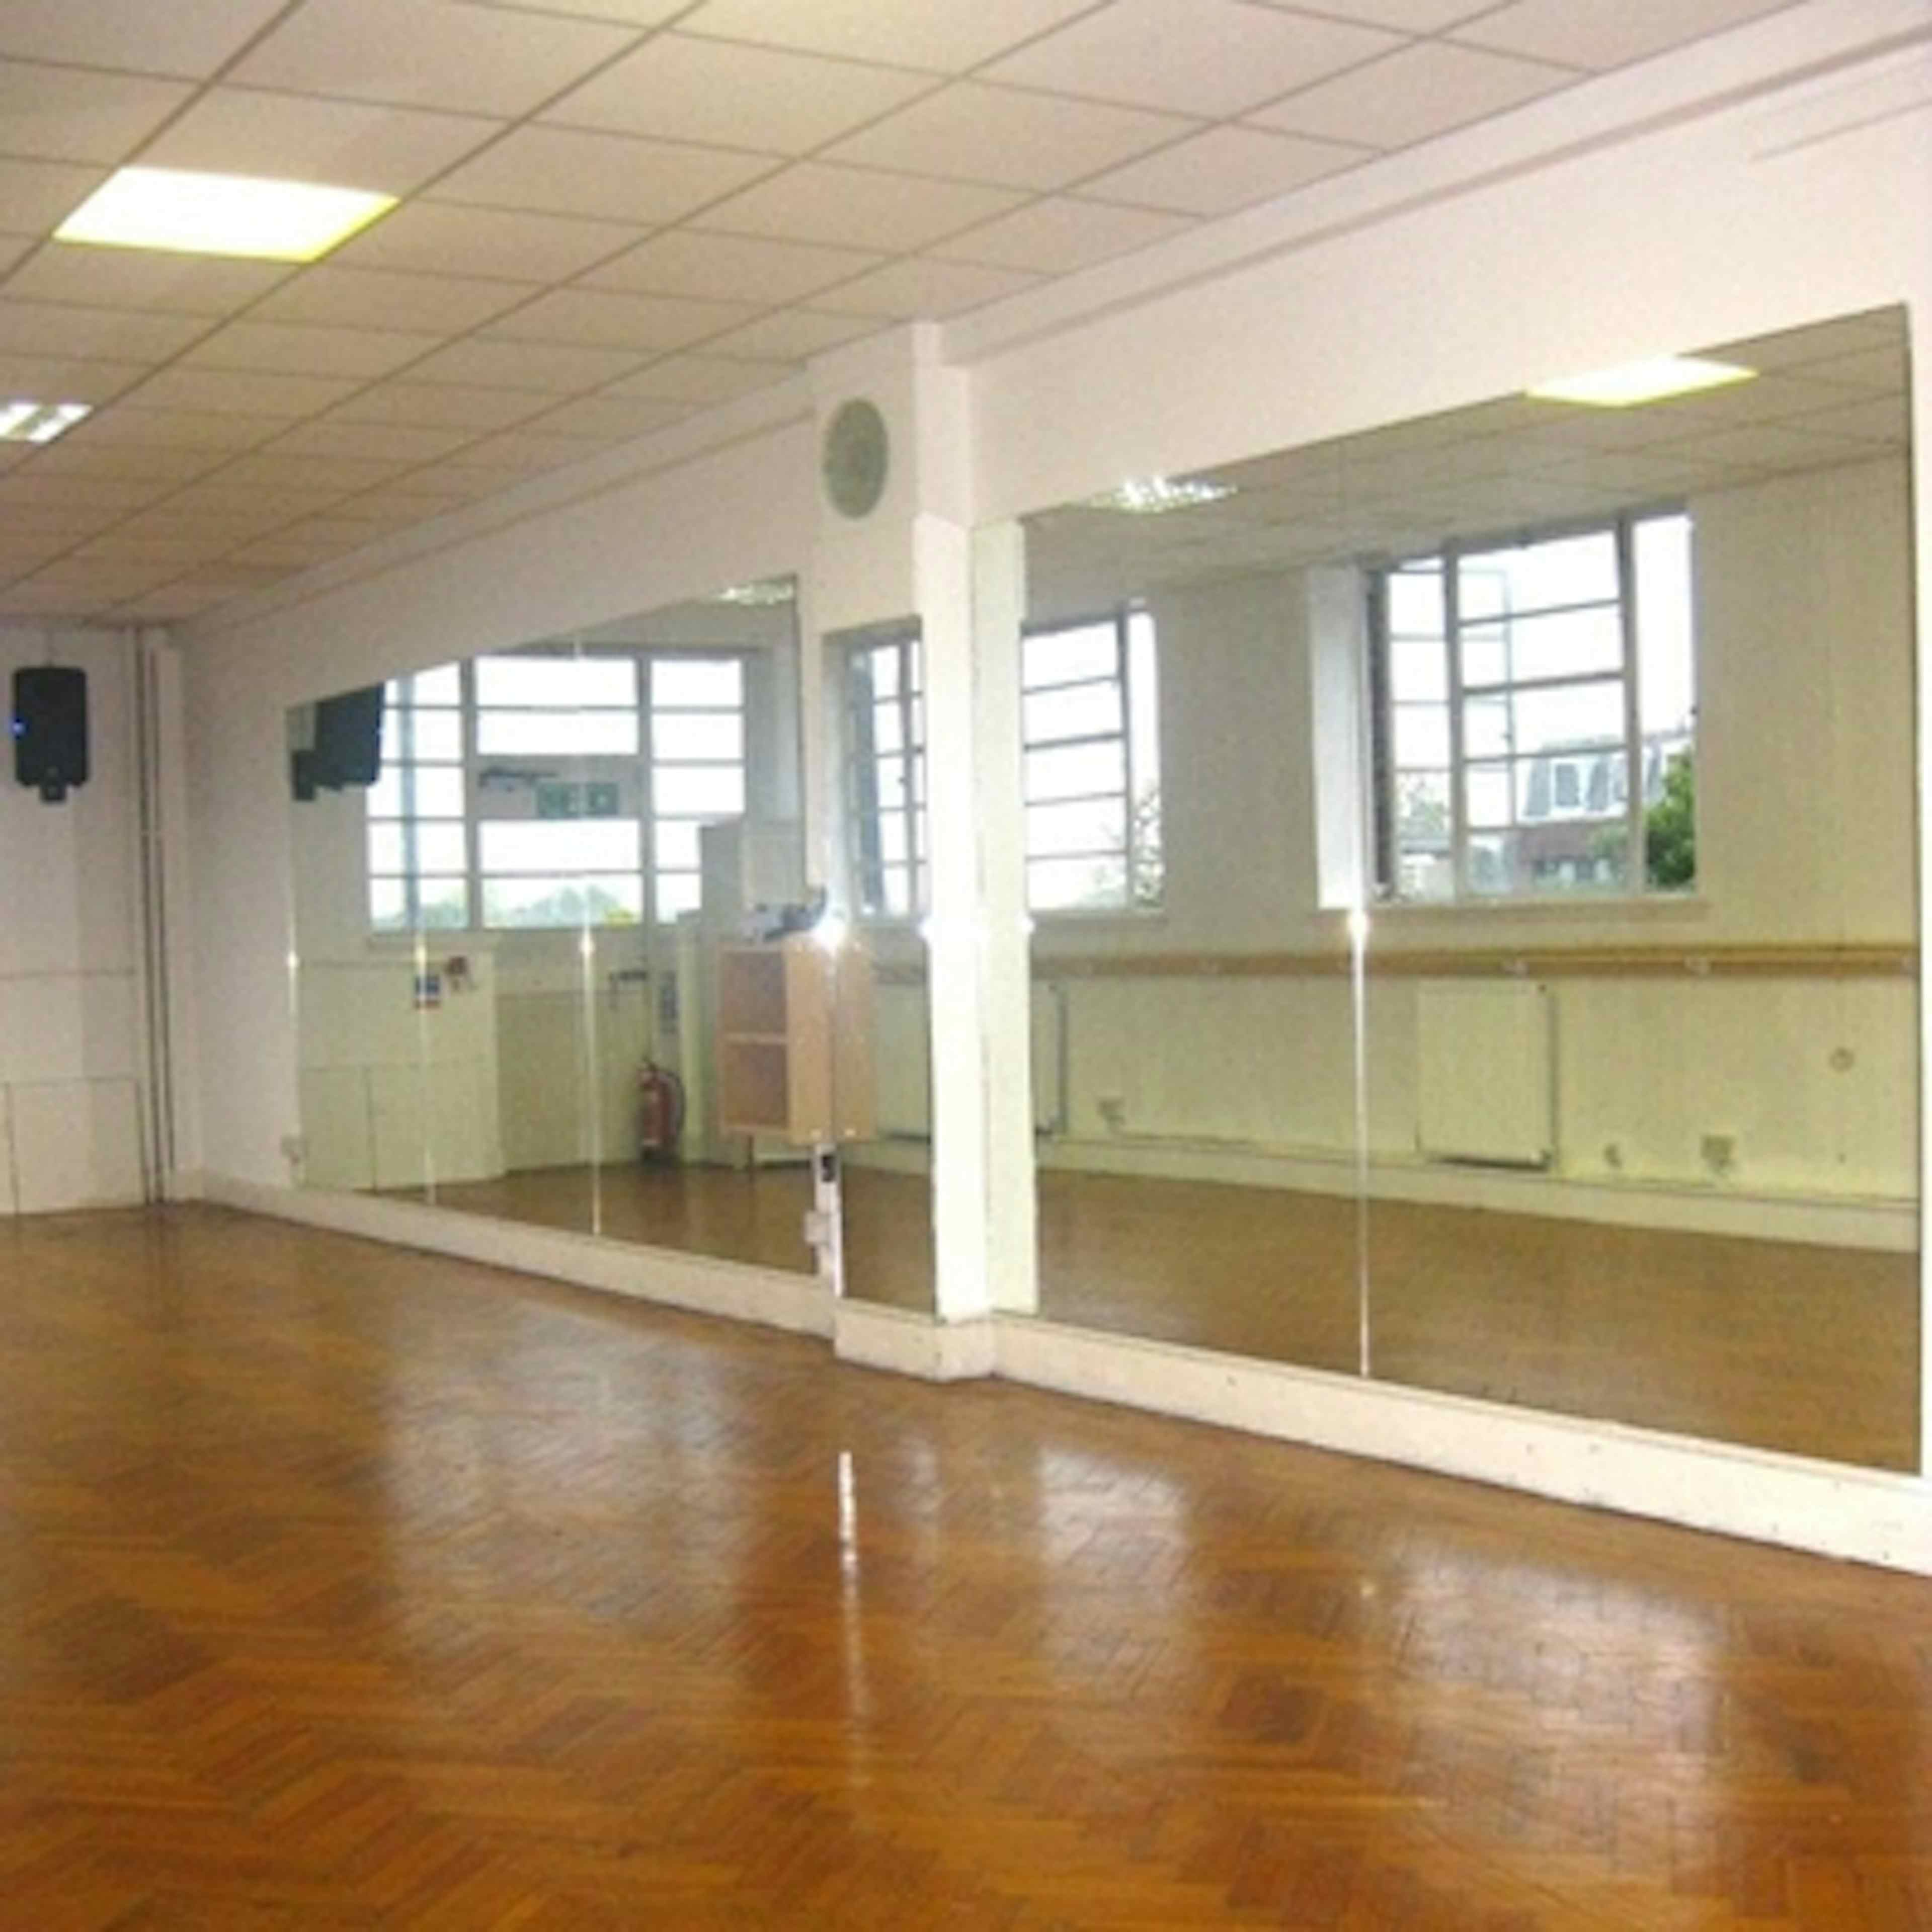 Husky Studios - Dance school image 2